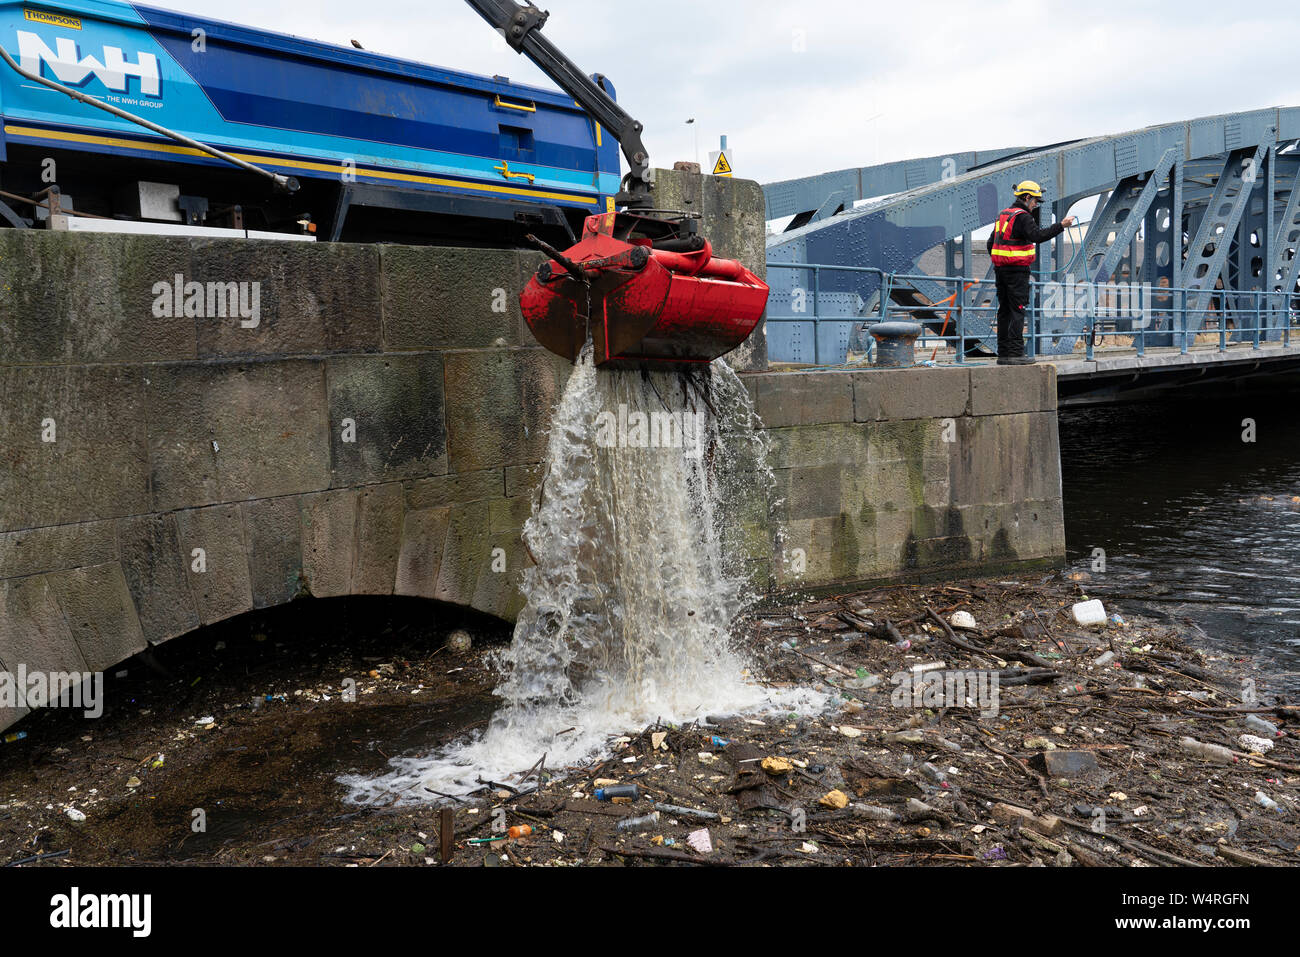 Nettoyage des débris recueillis au pont sur l'eau de rivière à Leith Leith après de fortes pluies, Ecosse, Royaume-Uni Banque D'Images